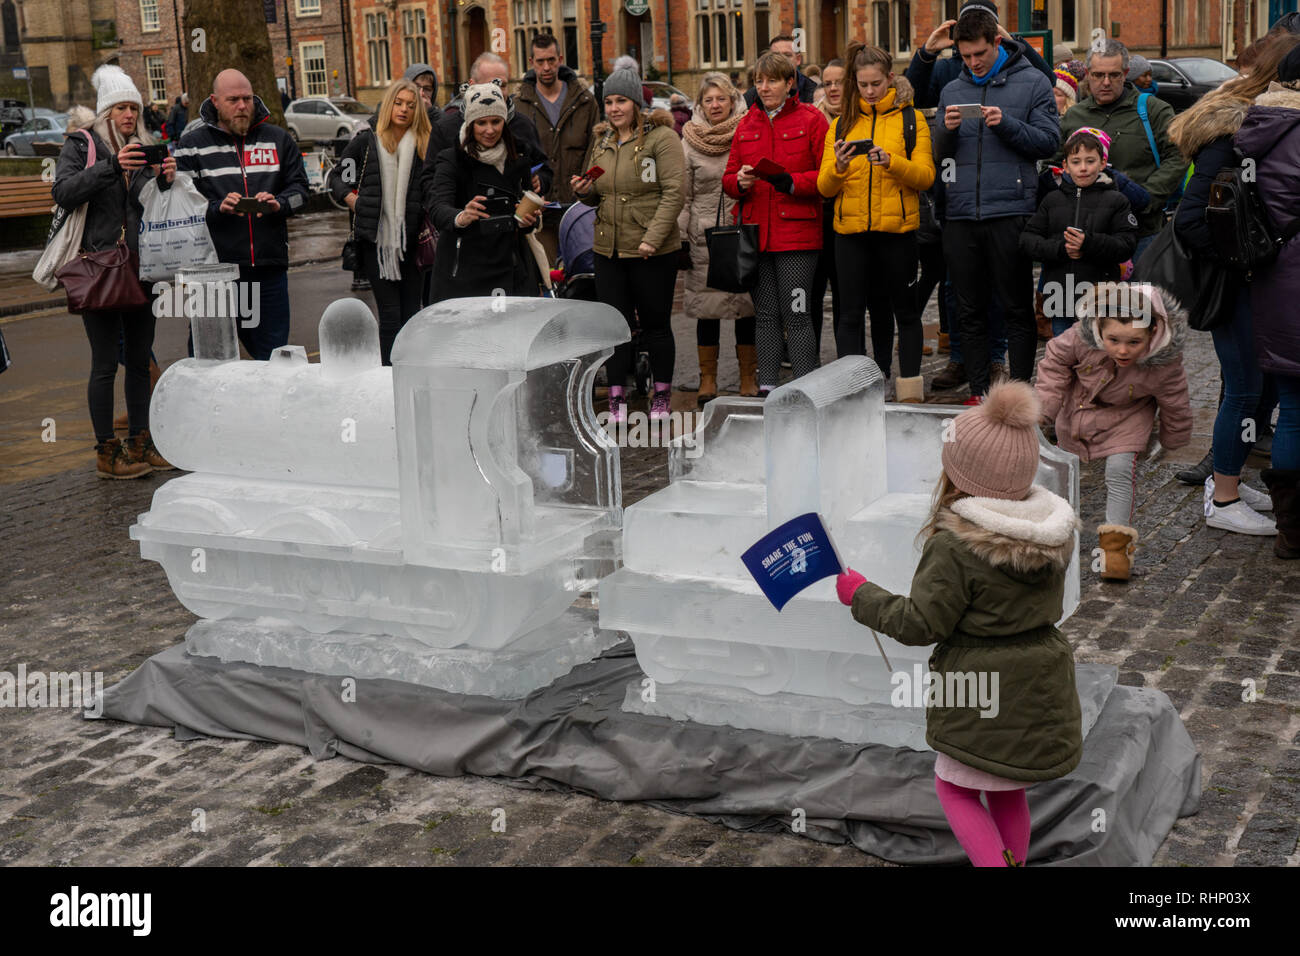 Une foule de personnes se sont rassemblées autour d'une sculpture représentant un train de glace le long de la piste de glace Myths et Legends York, dans le North Yorkshire, en Angleterre, au Royaume-Uni. Banque D'Images